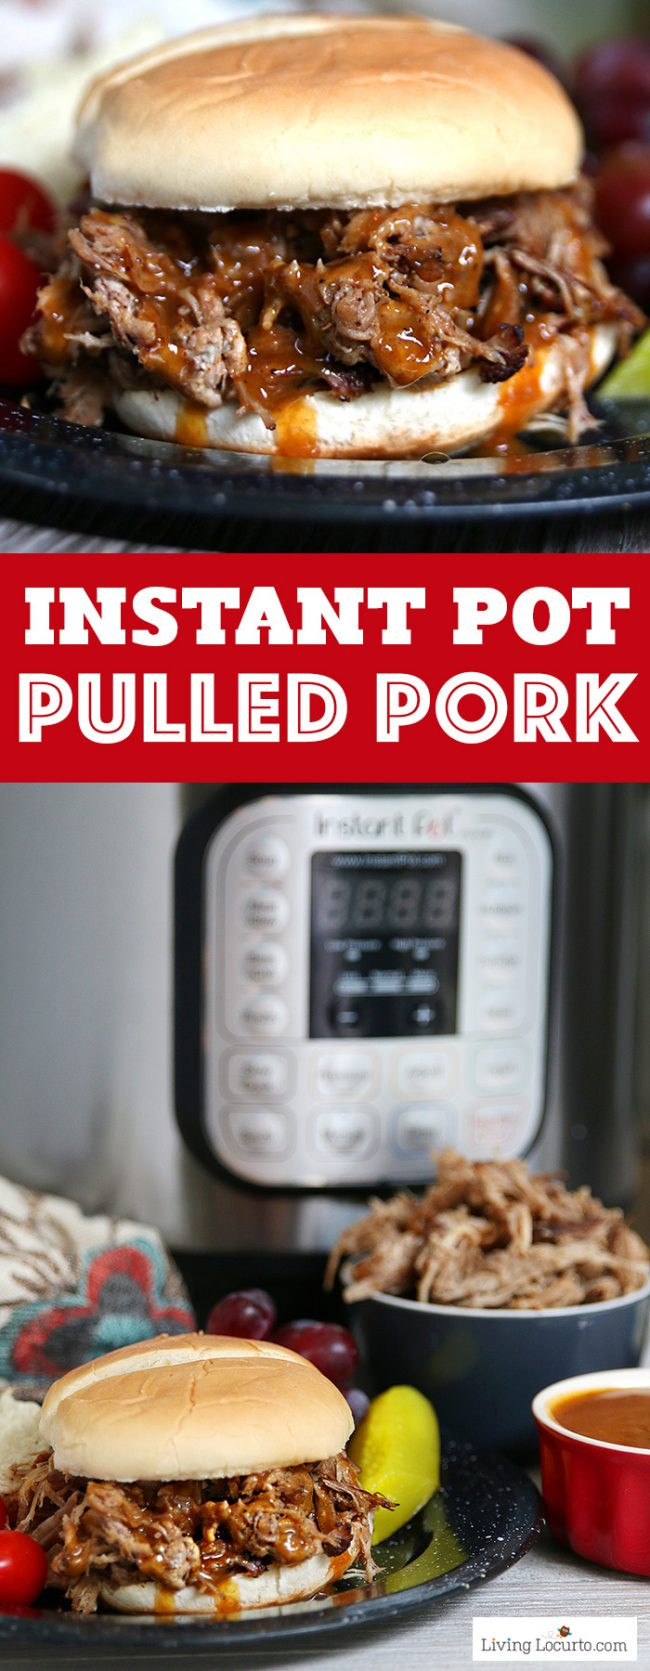 Pork Shoulder Roast Instant Pot
 Instant Pot Pulled Pork